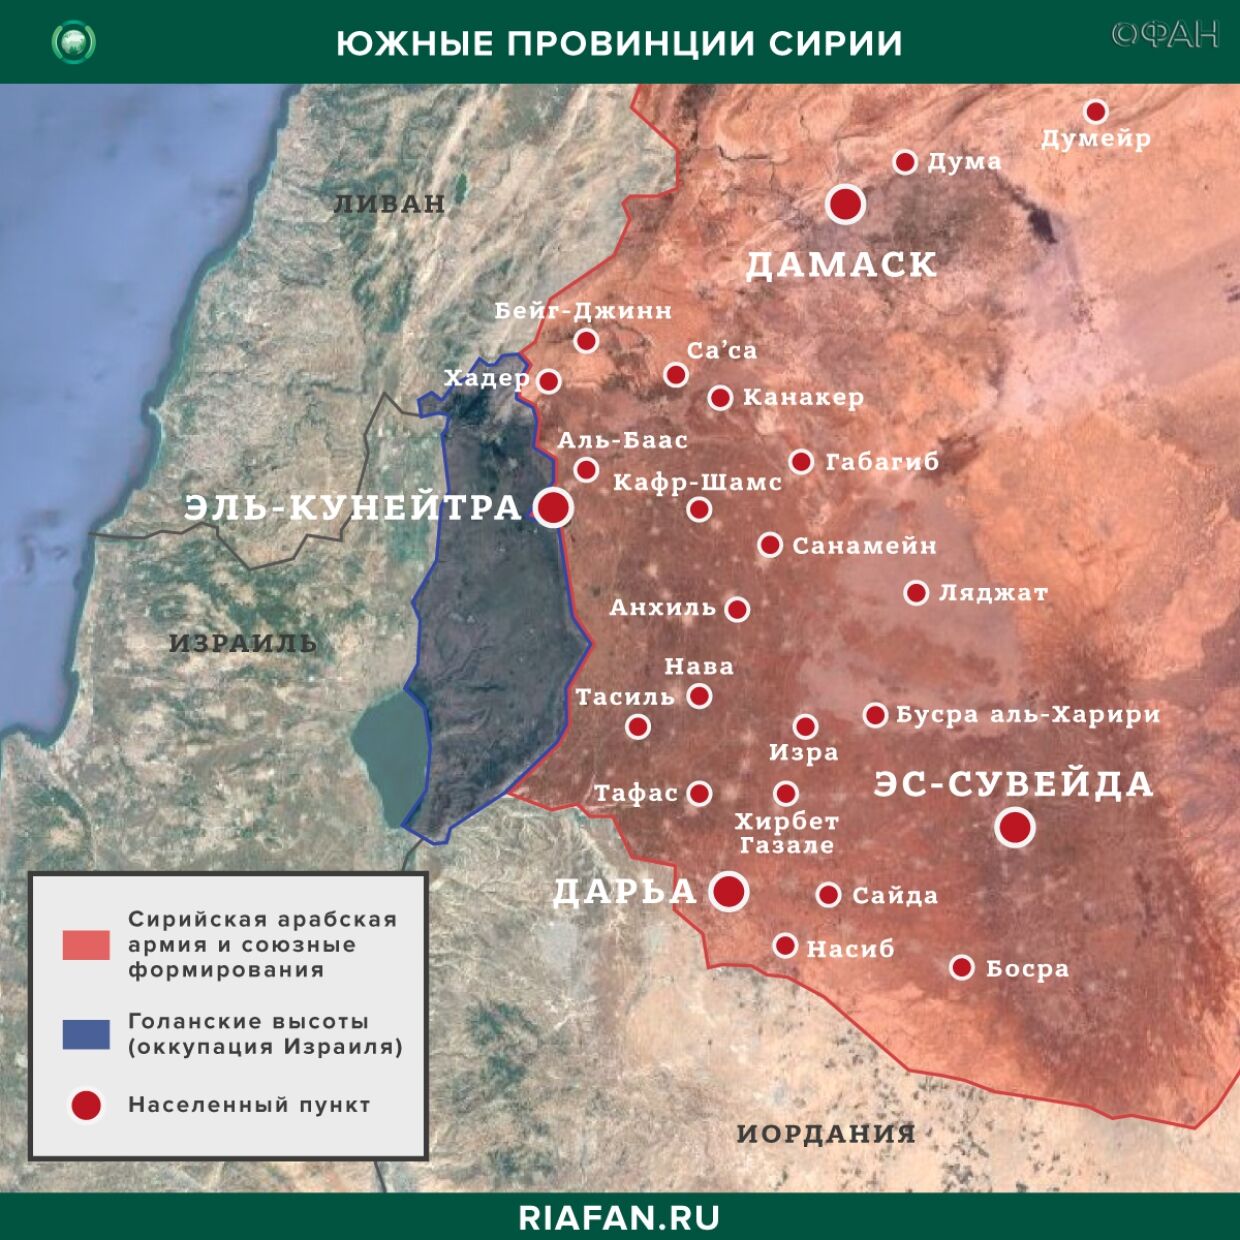 Nouvelles de Syrie 3 Peut 12.30: два человека погибли при взрыве мины в Эль-Кунейтре, рейды SDF и коалиции США в Дейр-эз-Зоре